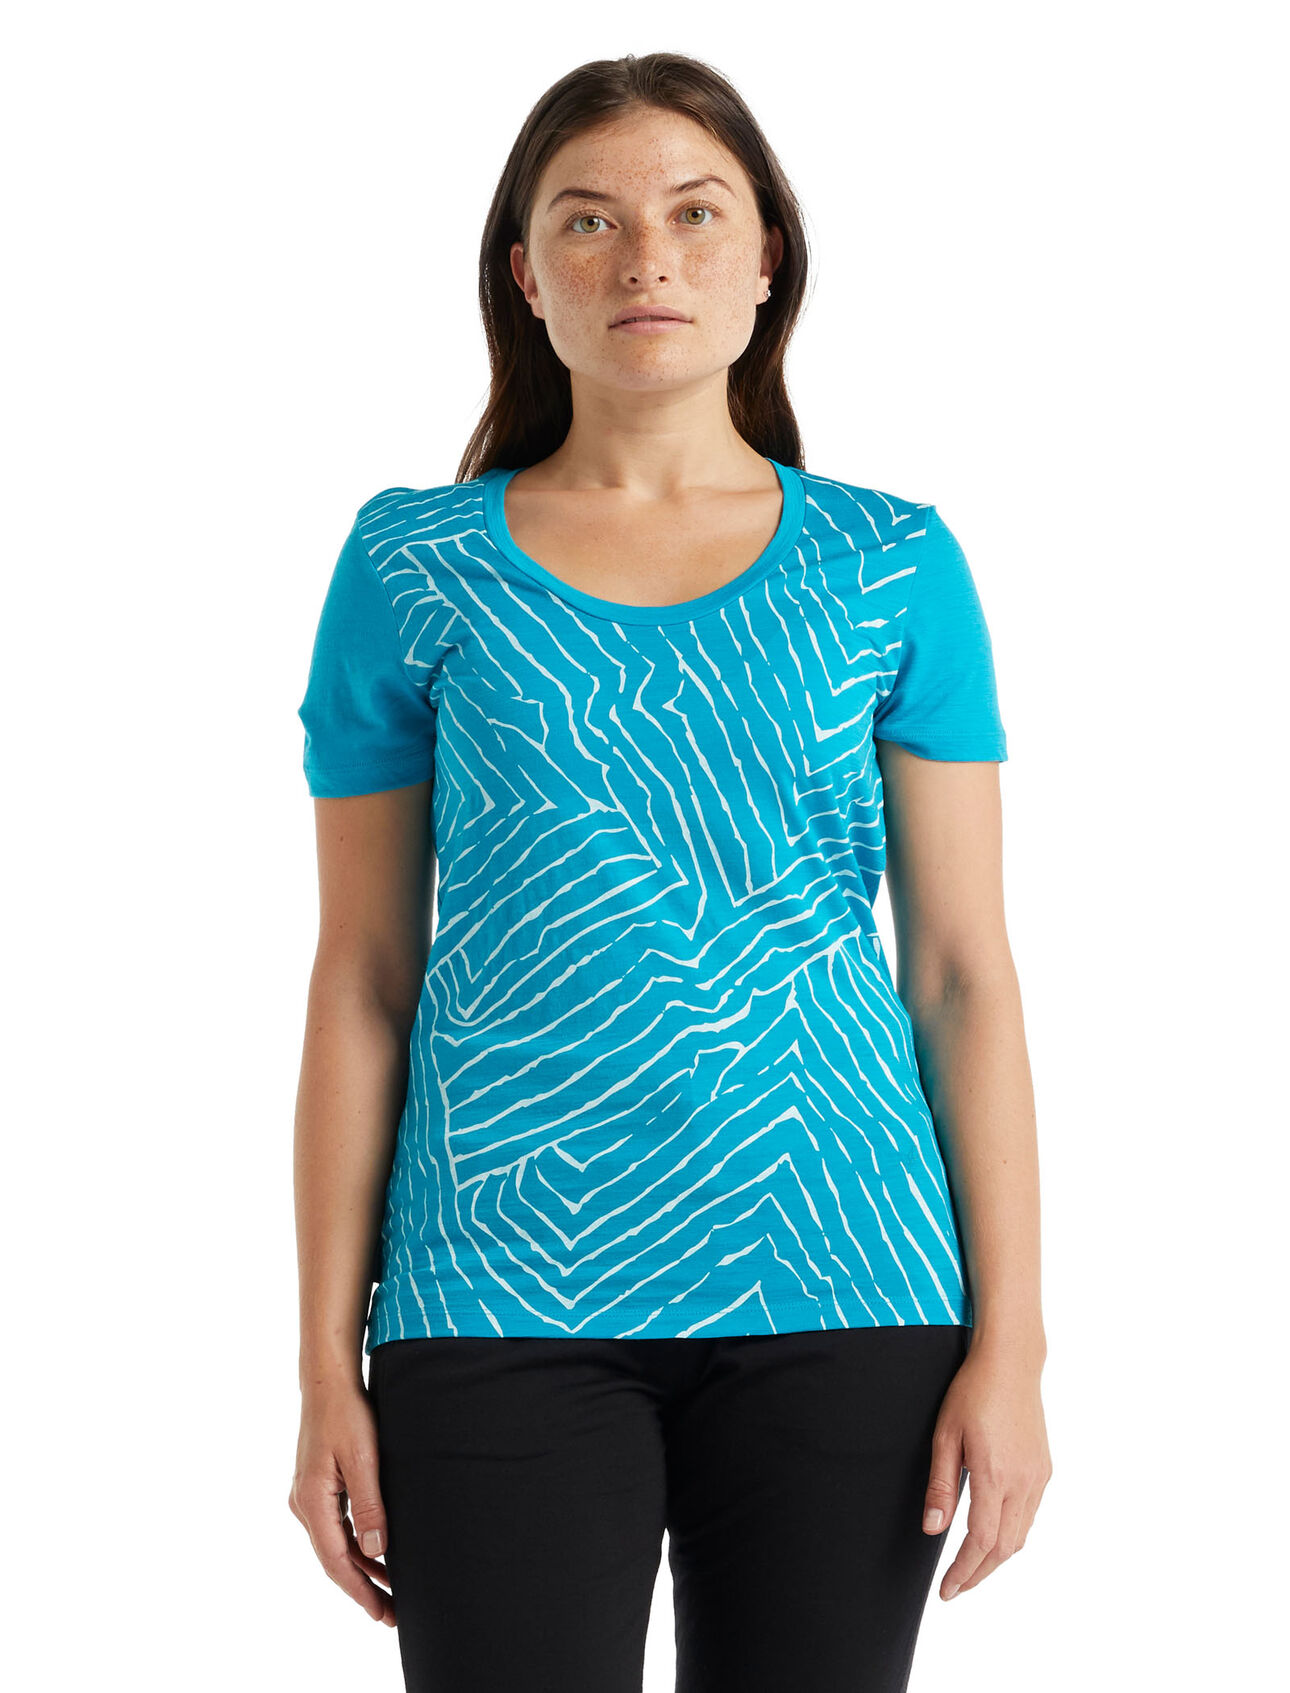 T-shirt in lana merino con scollo rotondo Tech Lite II Tessellated Pavement